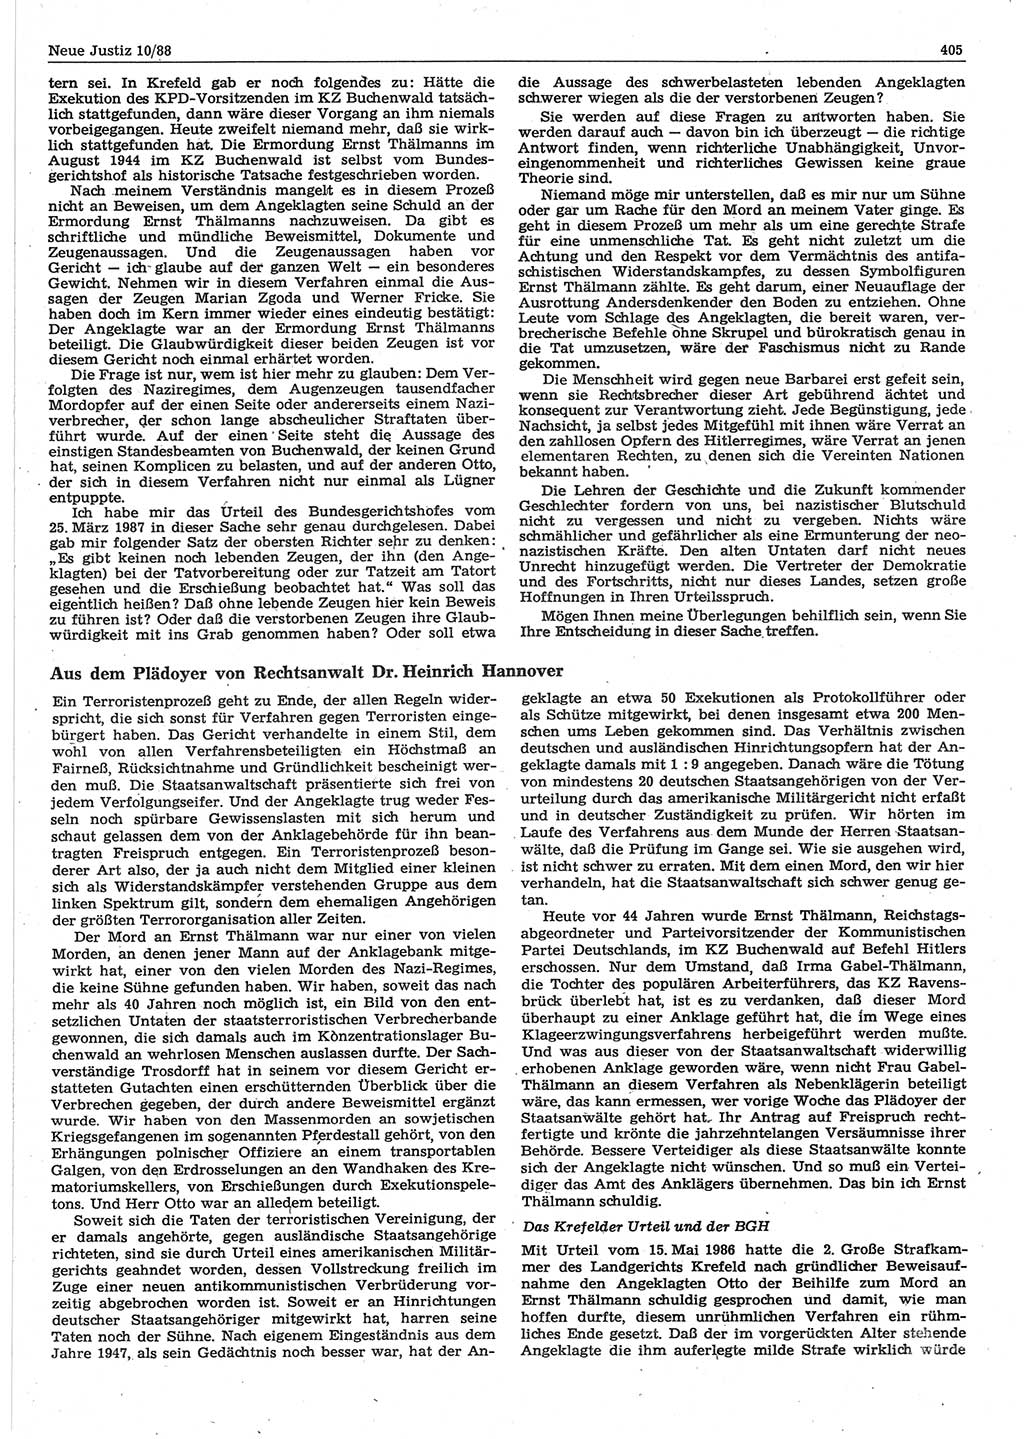 Neue Justiz (NJ), Zeitschrift für sozialistisches Recht und Gesetzlichkeit [Deutsche Demokratische Republik (DDR)], 42. Jahrgang 1988, Seite 405 (NJ DDR 1988, S. 405)